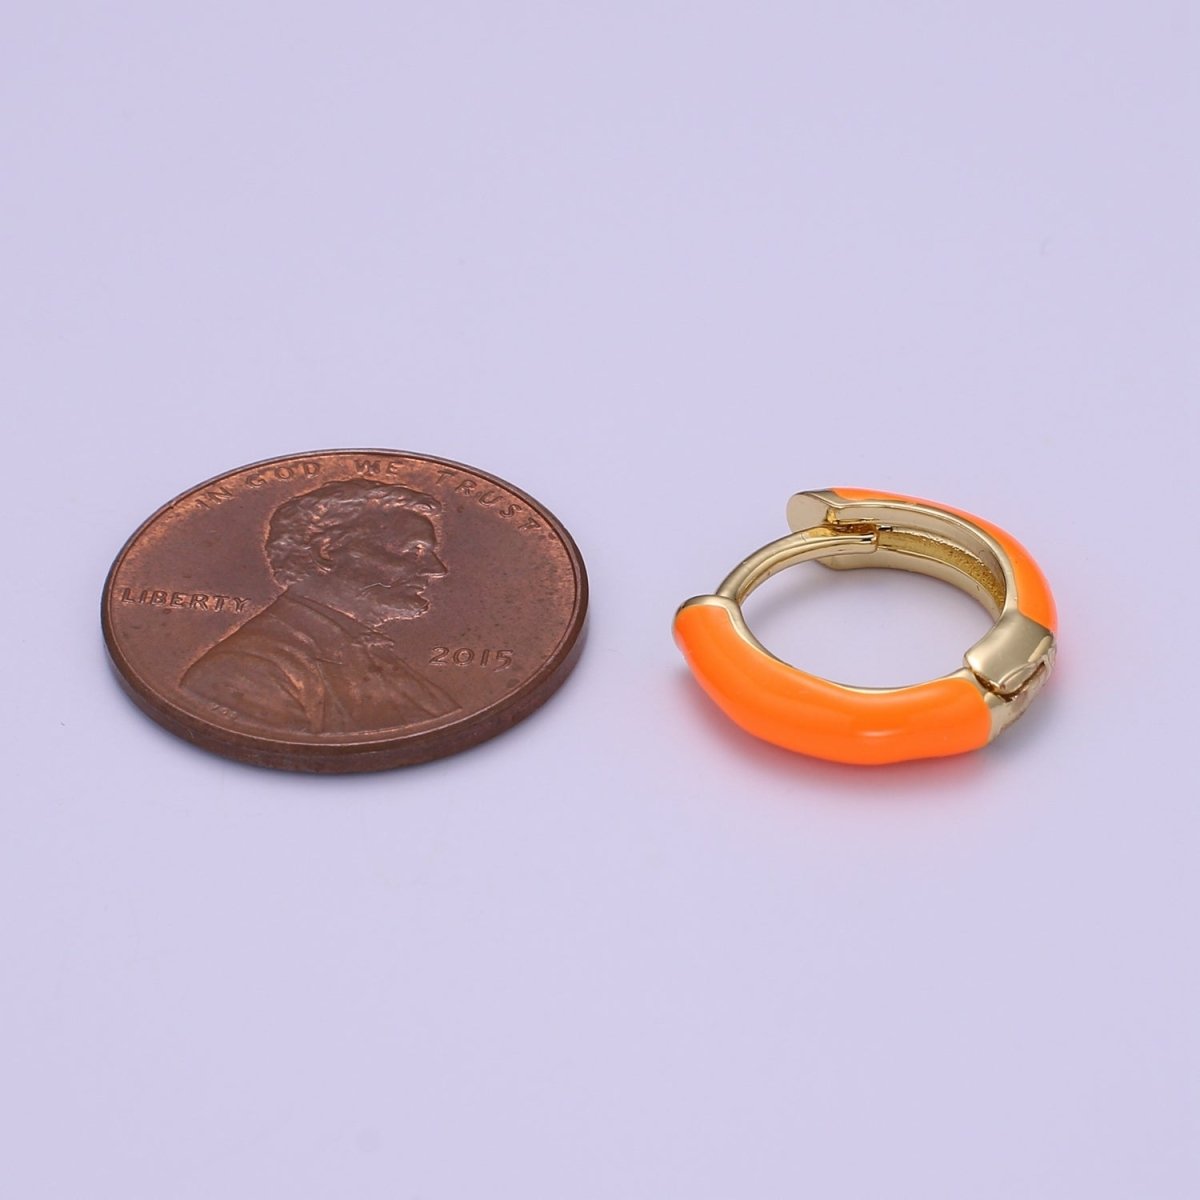 Enamel Hoop Earrings • Colorful gold cartilage hoop • Dainty huggie hoop earrings Neon Blue Pink Green Orange Teal White Earring 15mm P-063~P-071 - DLUXCA